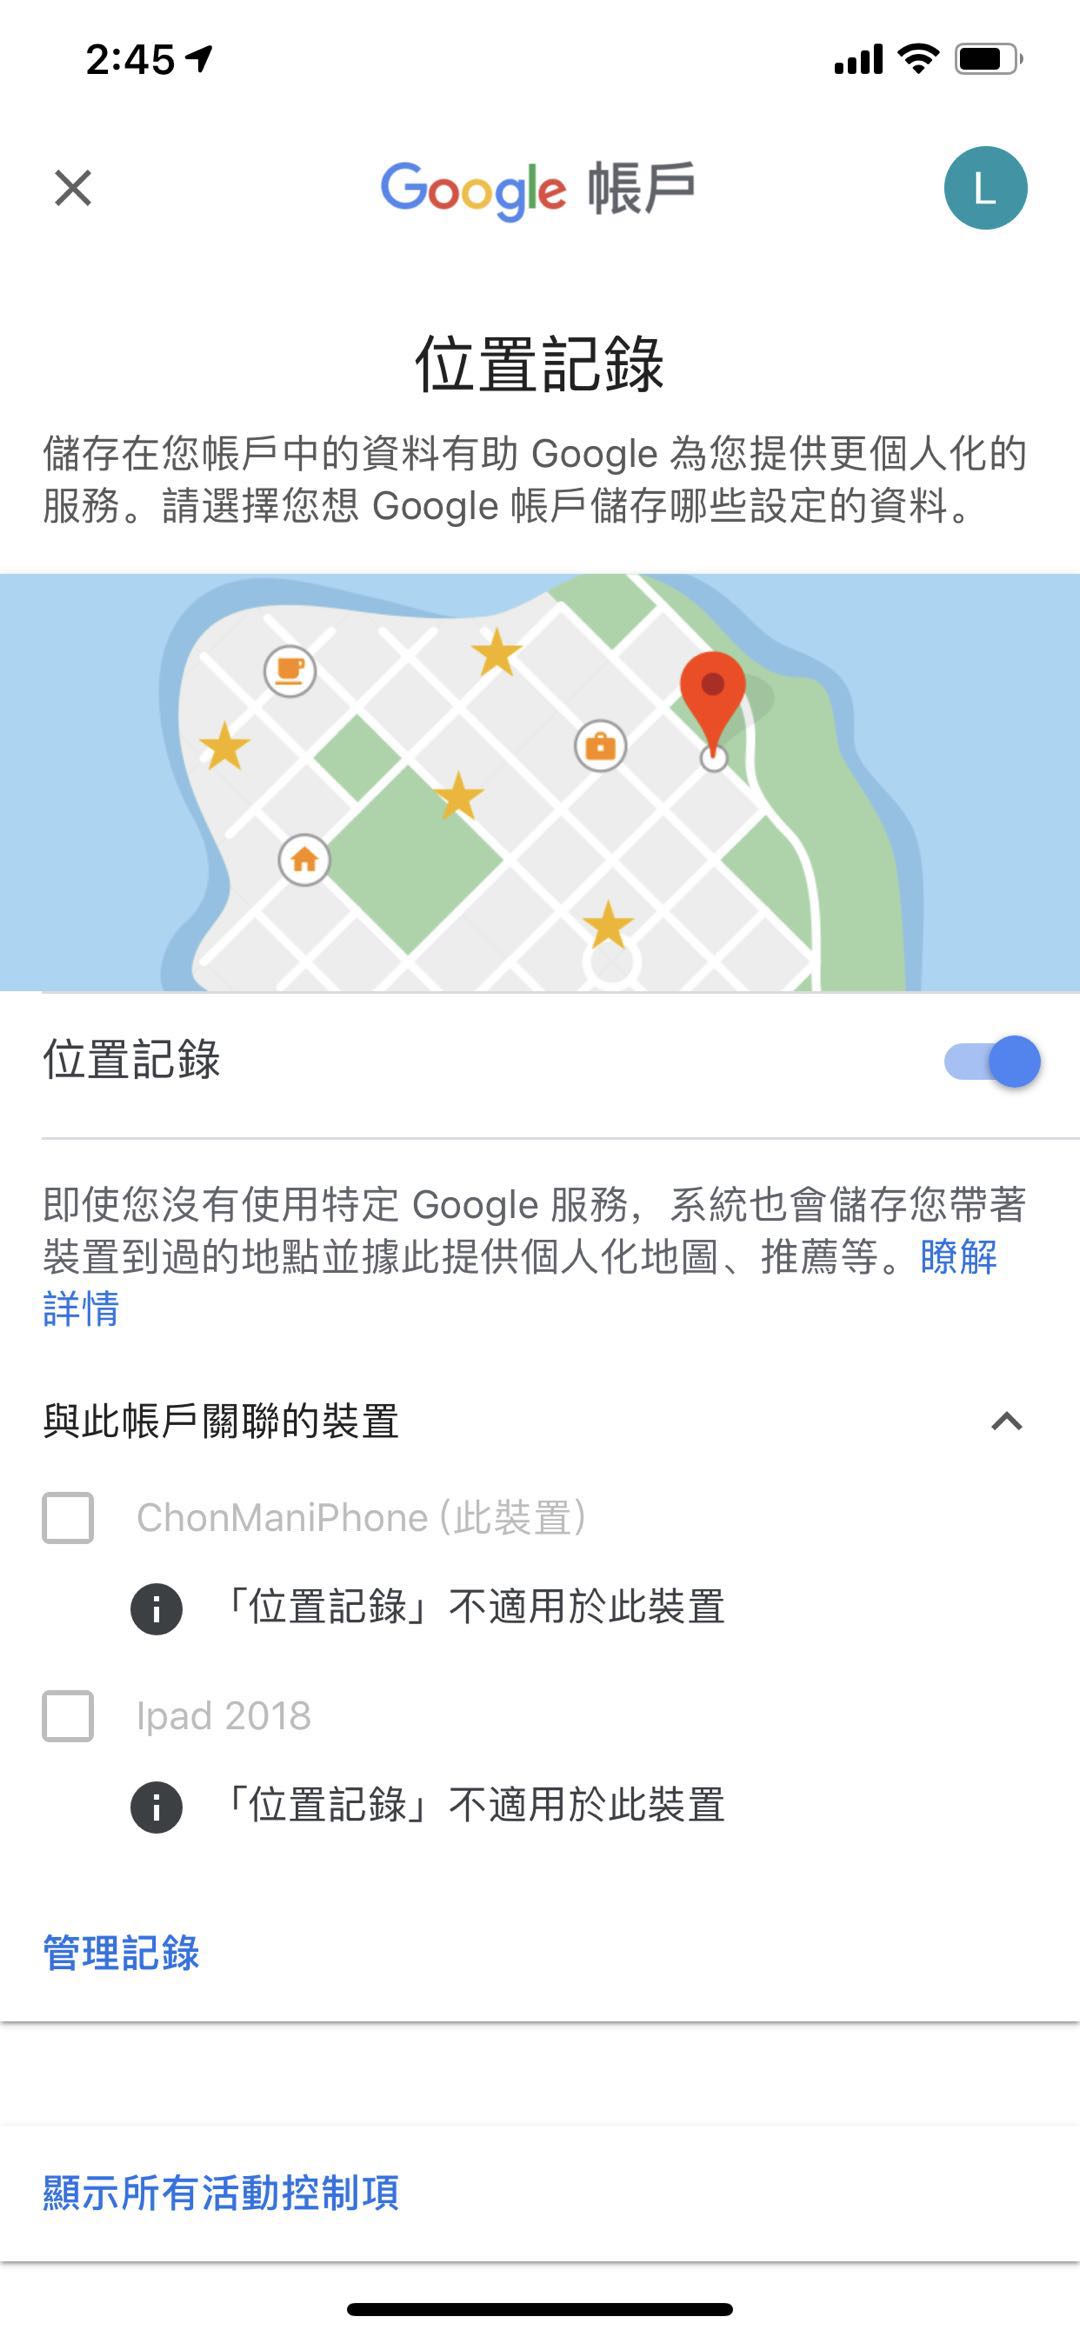 我電話是iphone Xs Max Google Map的定位紀錄一直開不到 說我的裝置不適用 有解決辦法嗎 我gps都開了永遠都是不行